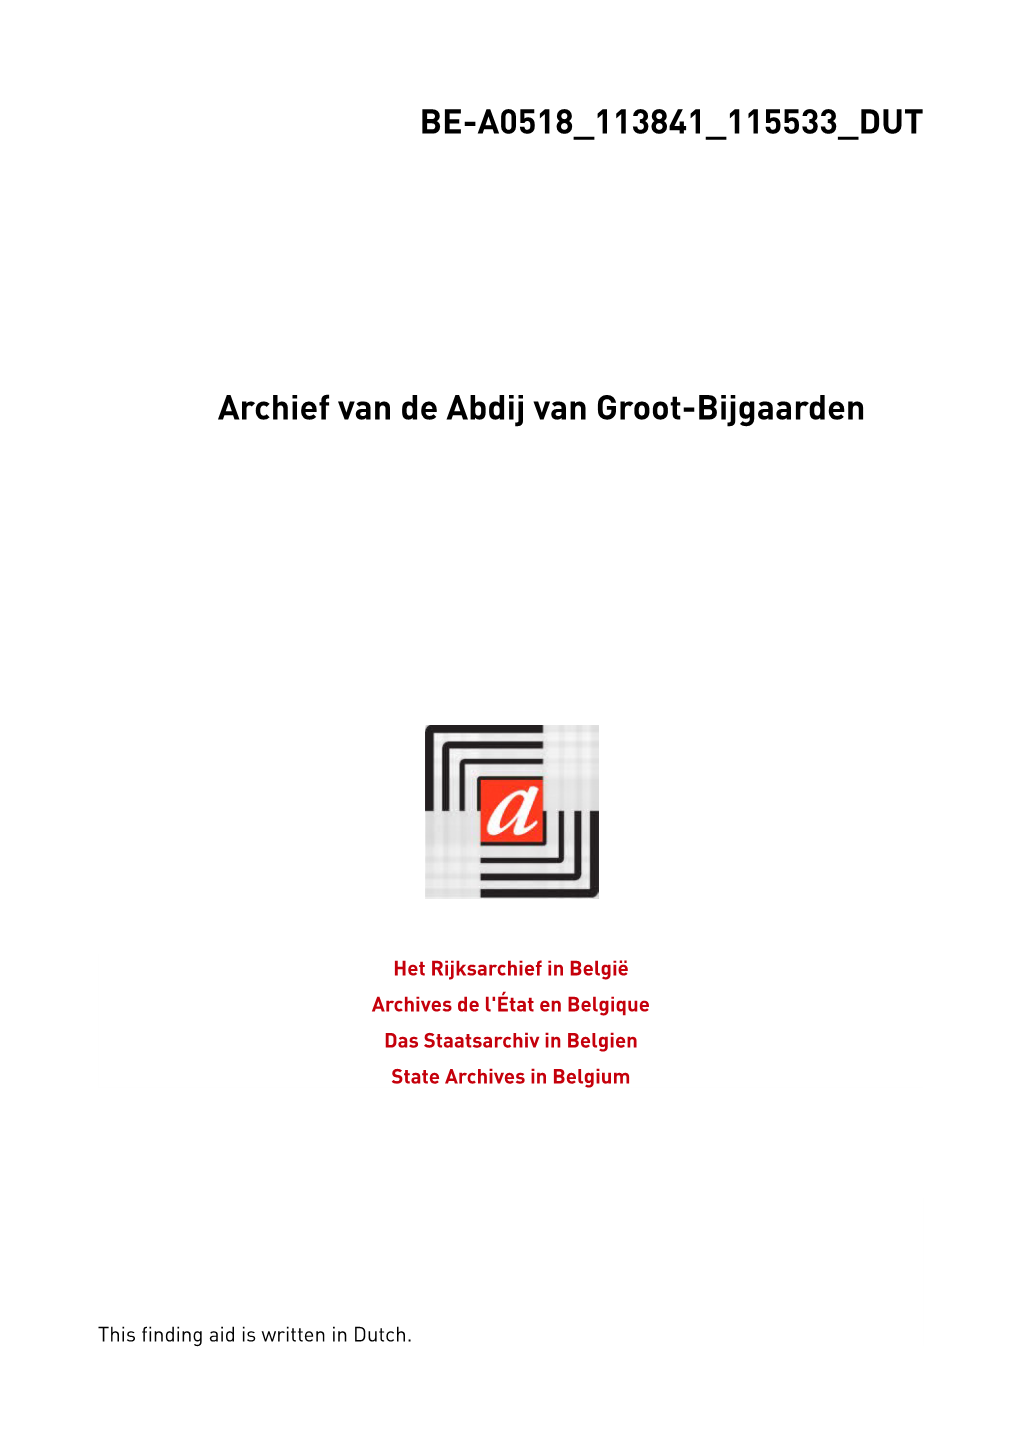 BE-A0518 113841 115533 DUT Archief Van De Abdij Van Groot